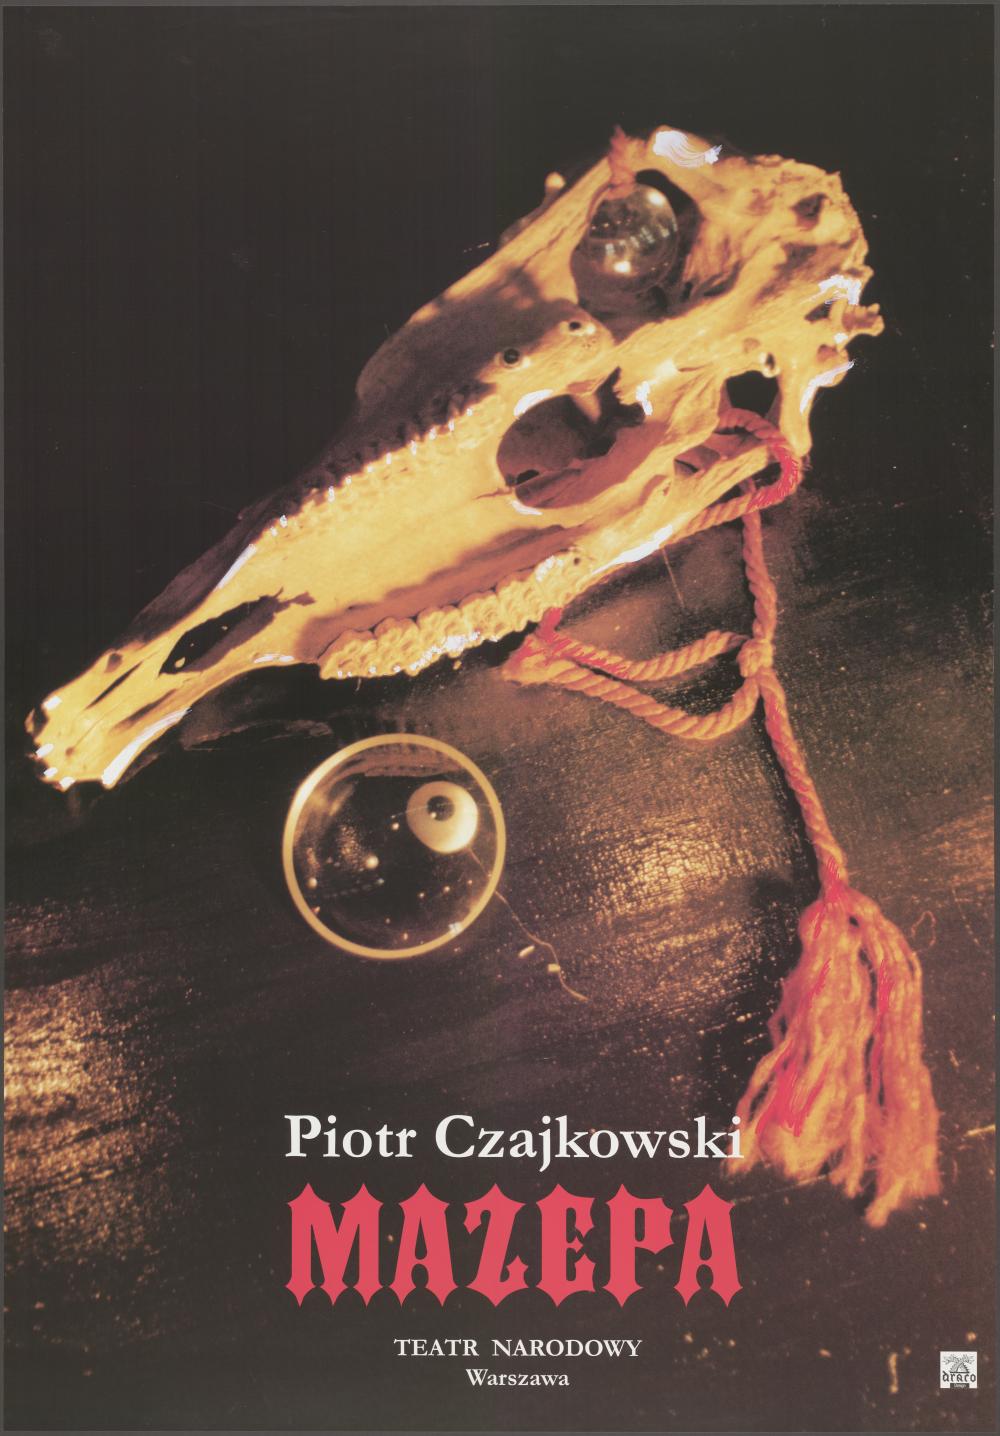 Plakat „Mazepa” Piotr Czajkowski 24-02-1996